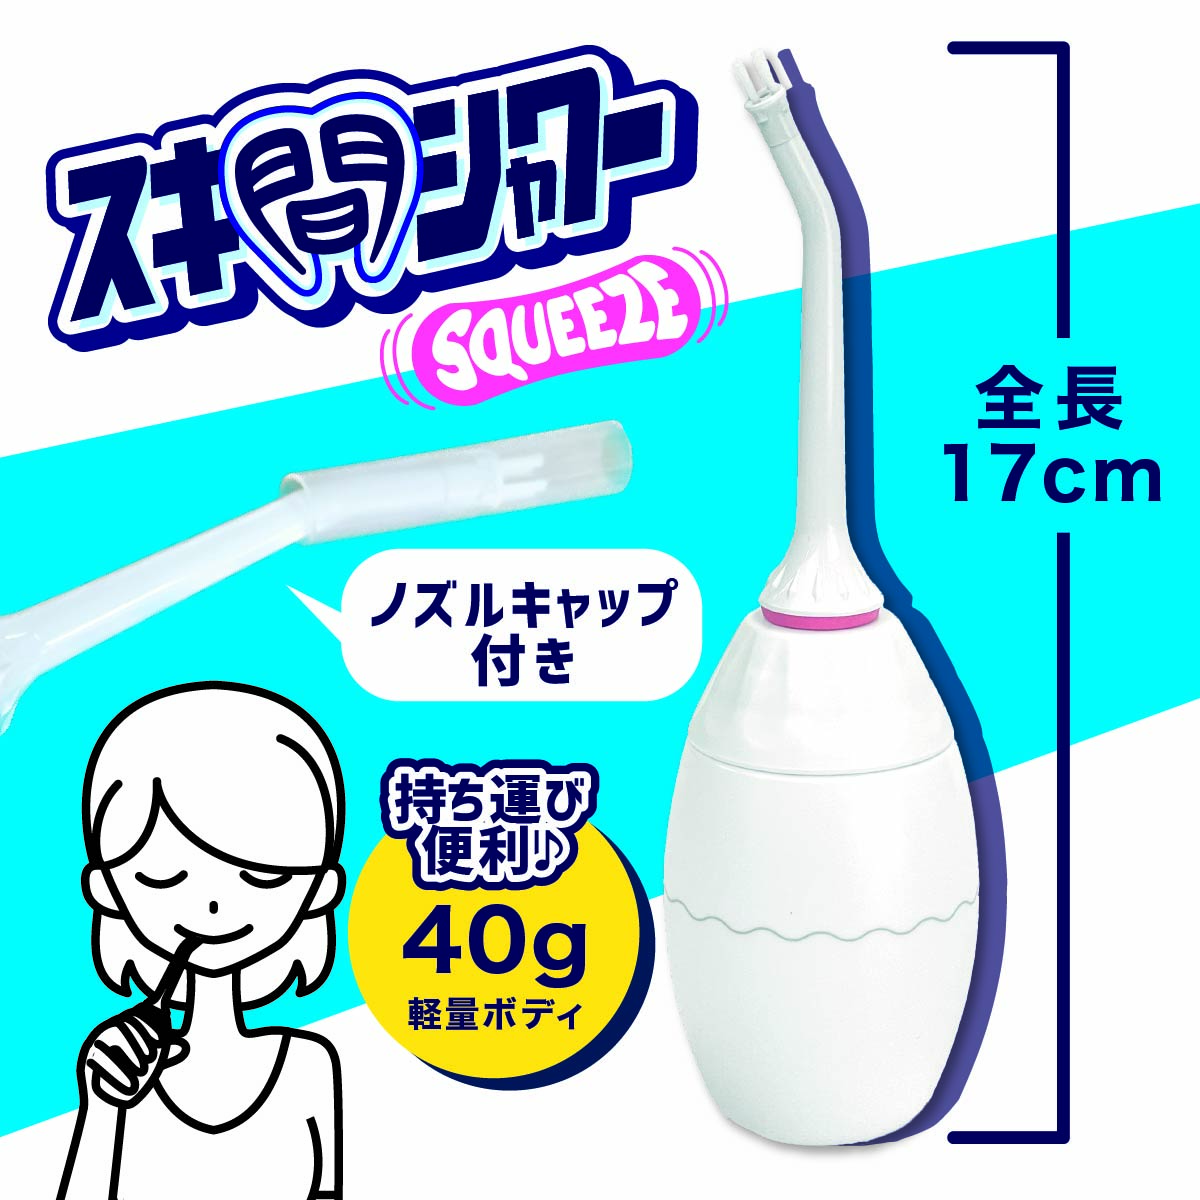 スキ間シャワー/歯ブラシ/歯ブラシ手動水流/歯ブラシ携帯/歯磨き改善/歯磨き対策